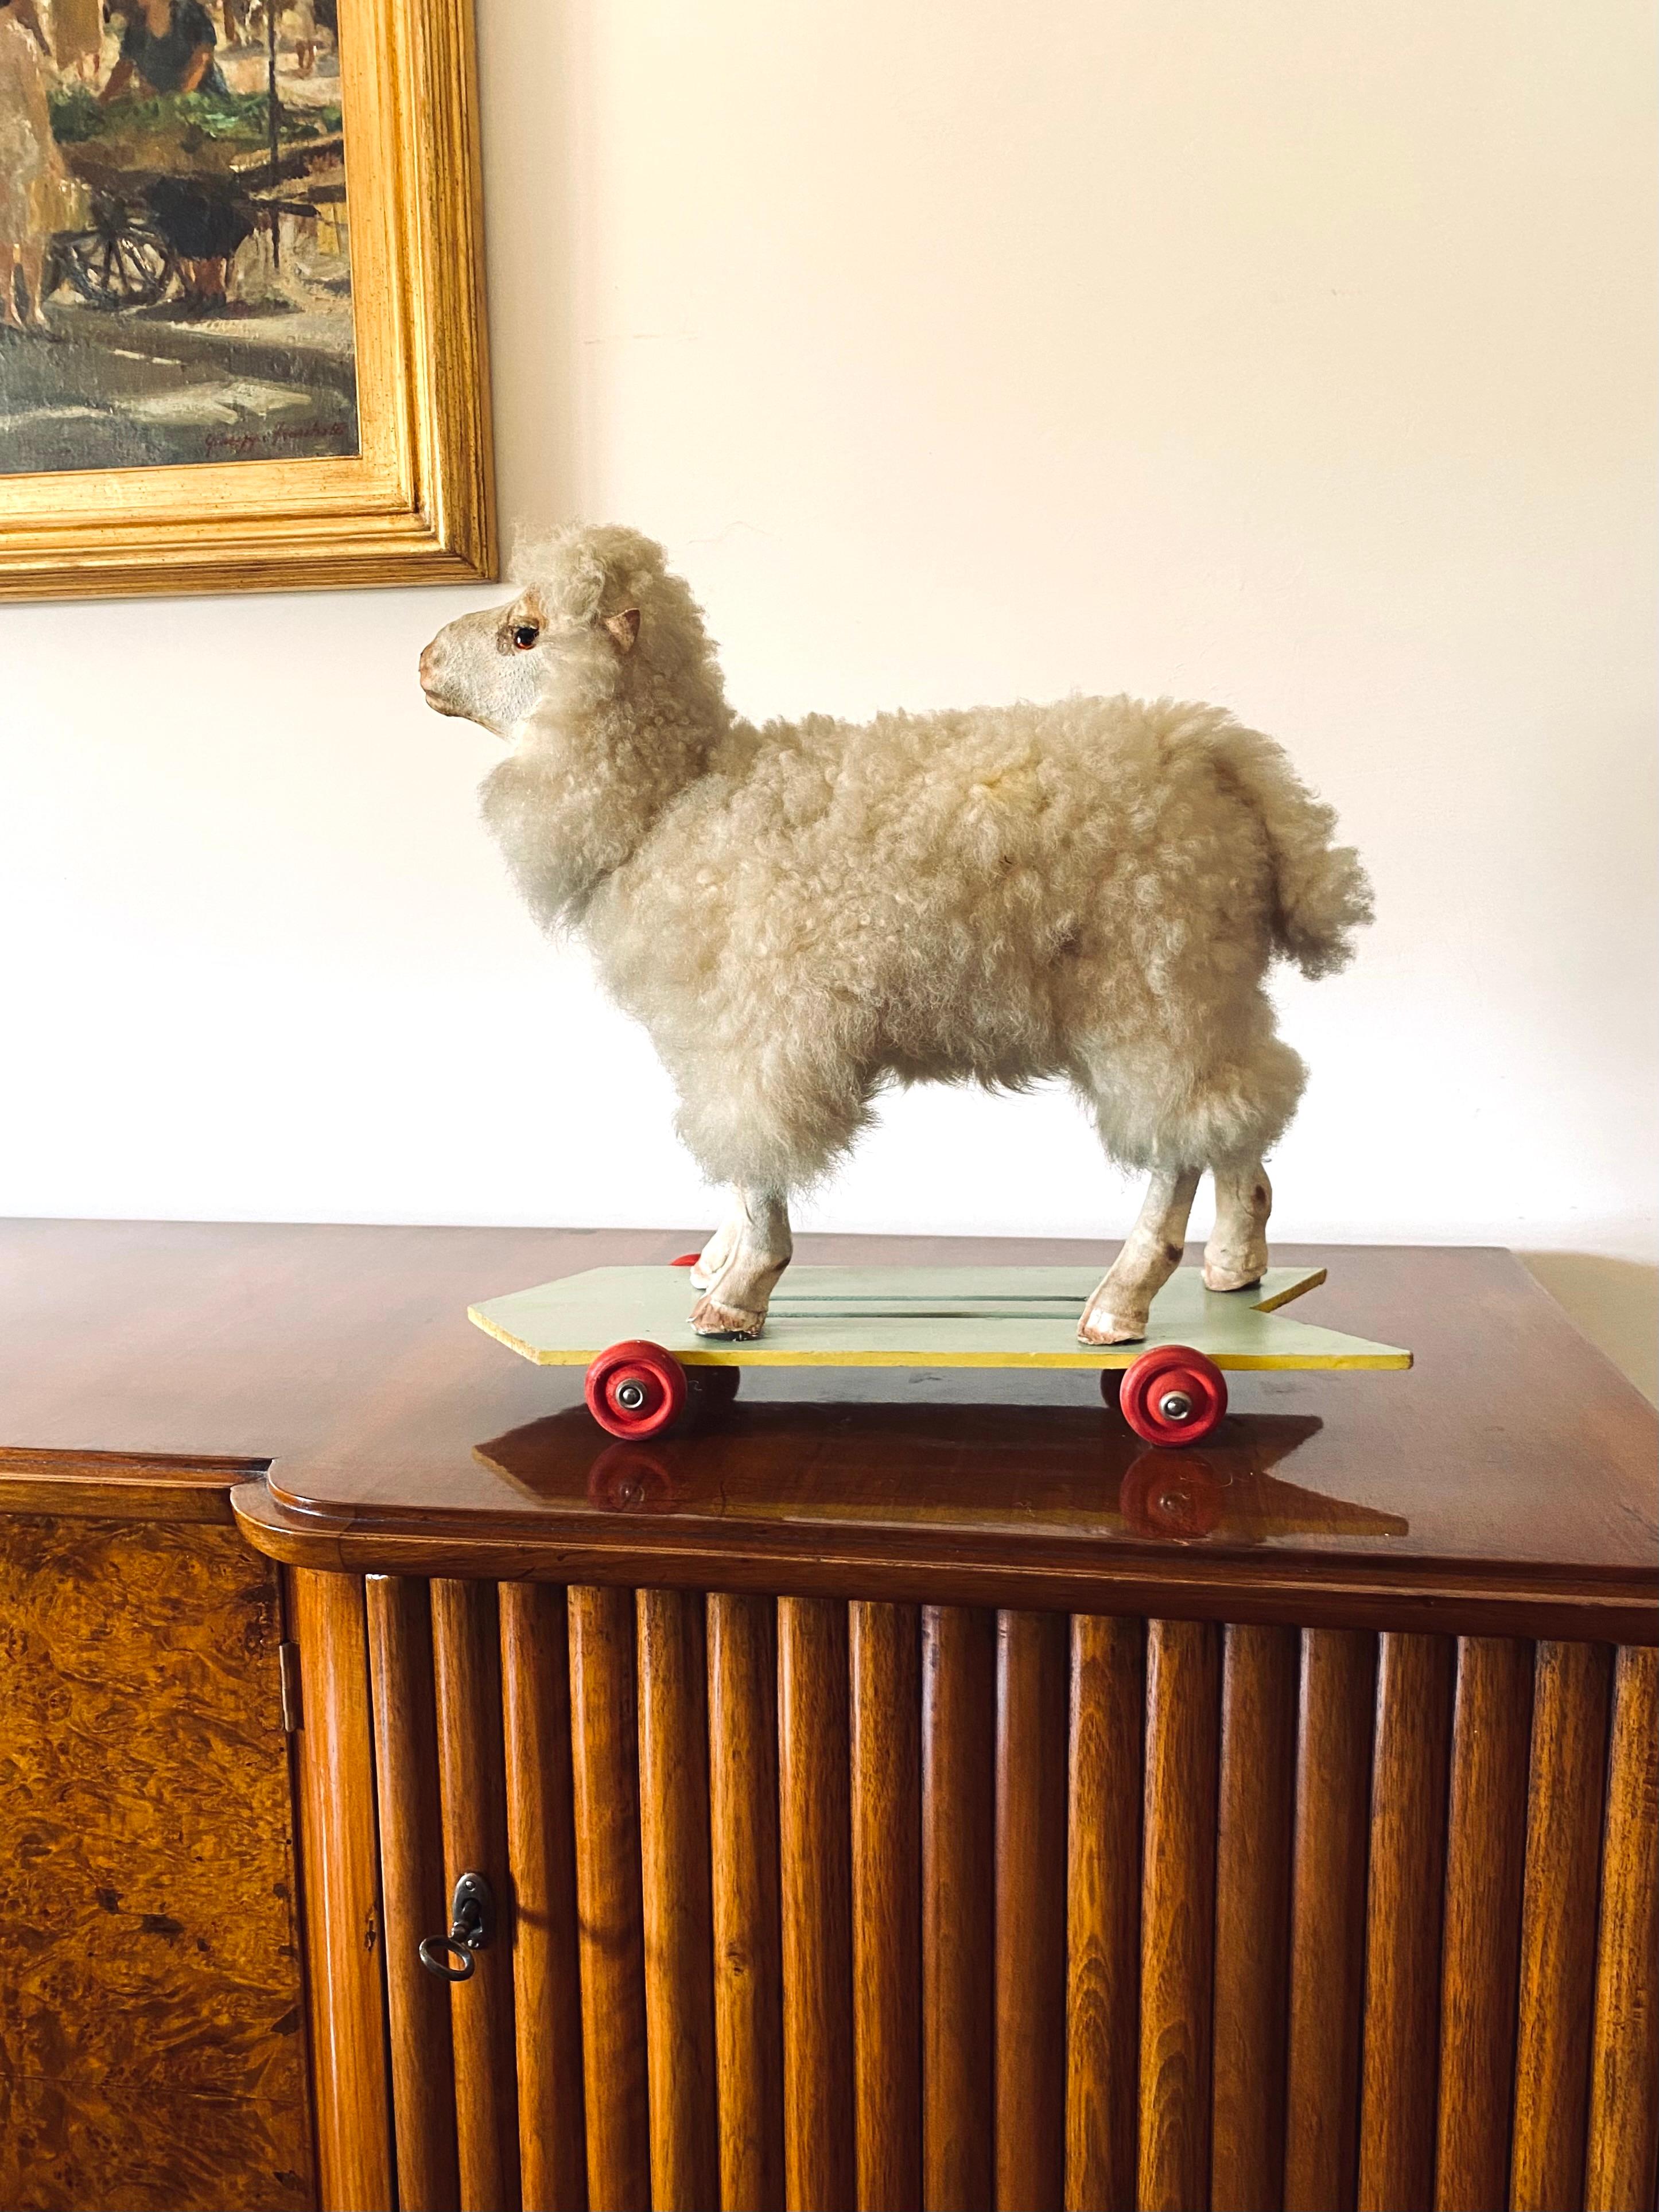 Jouet à rouler en forme de mouton d'art populaire

Allemagne, première moitié du XXe siècle

laine, bois, tissu

En pliant le cou, le mouton bêle. 

Haute qualité de fabrication.

H 40 cm - 46 x 18 cm

Condit : bon, conforme à l'âge et à